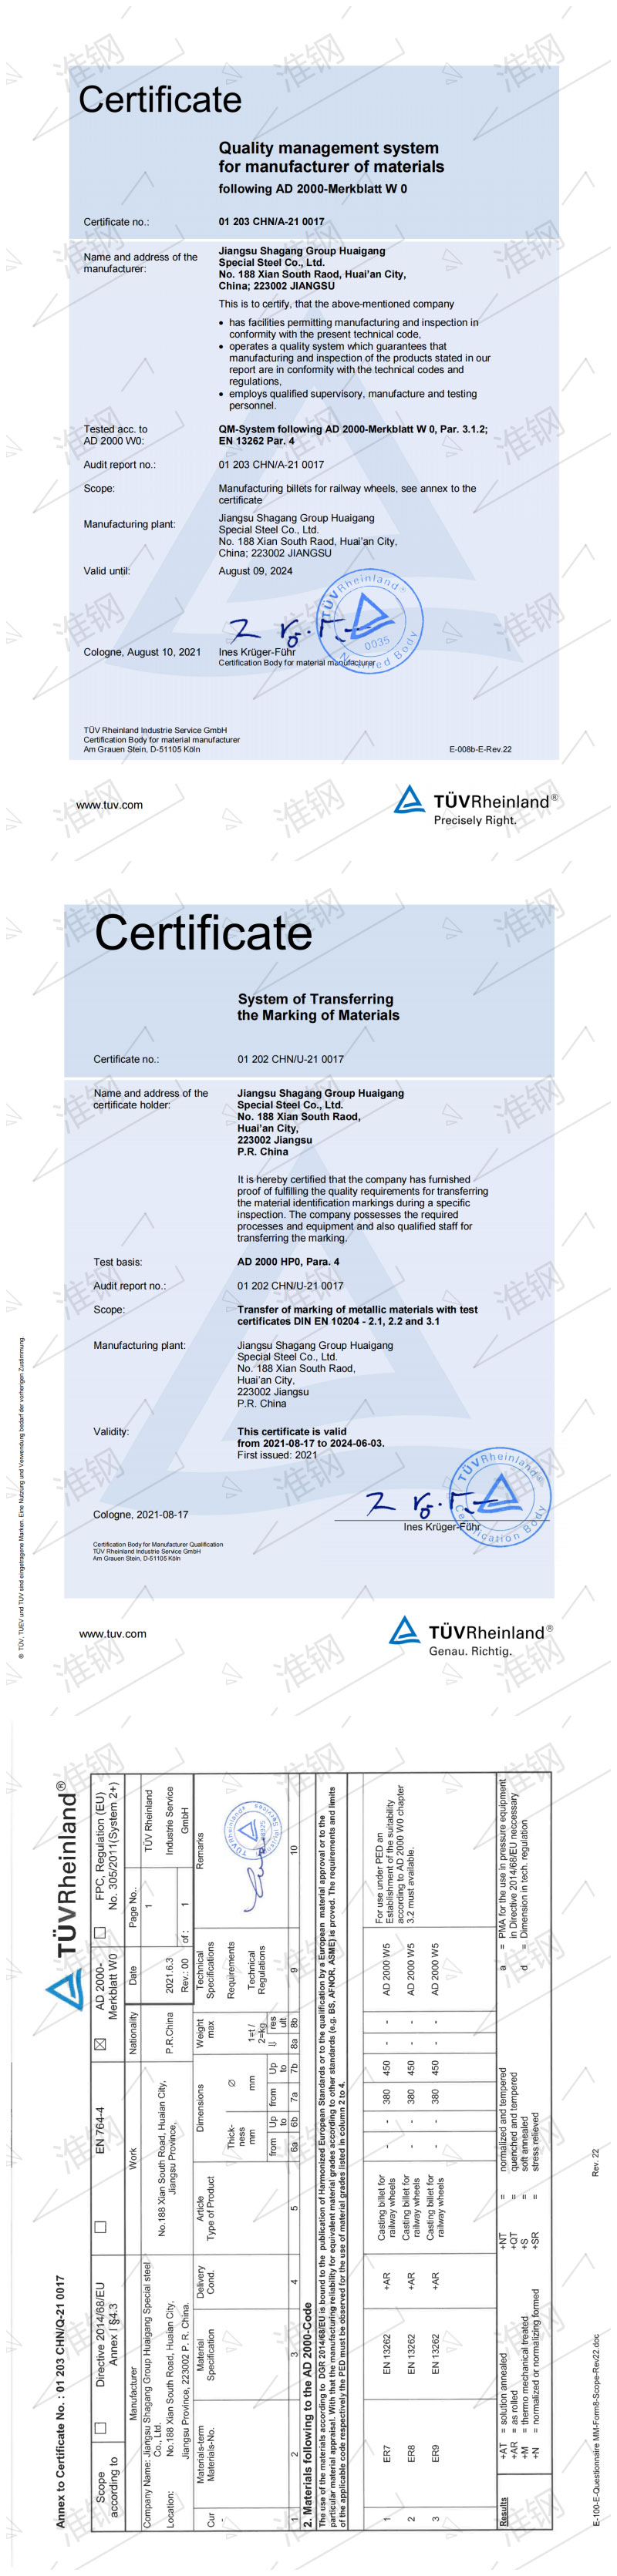 车轮钢坯ER系列-德国莱茵qy球友会（TUV）认证证书